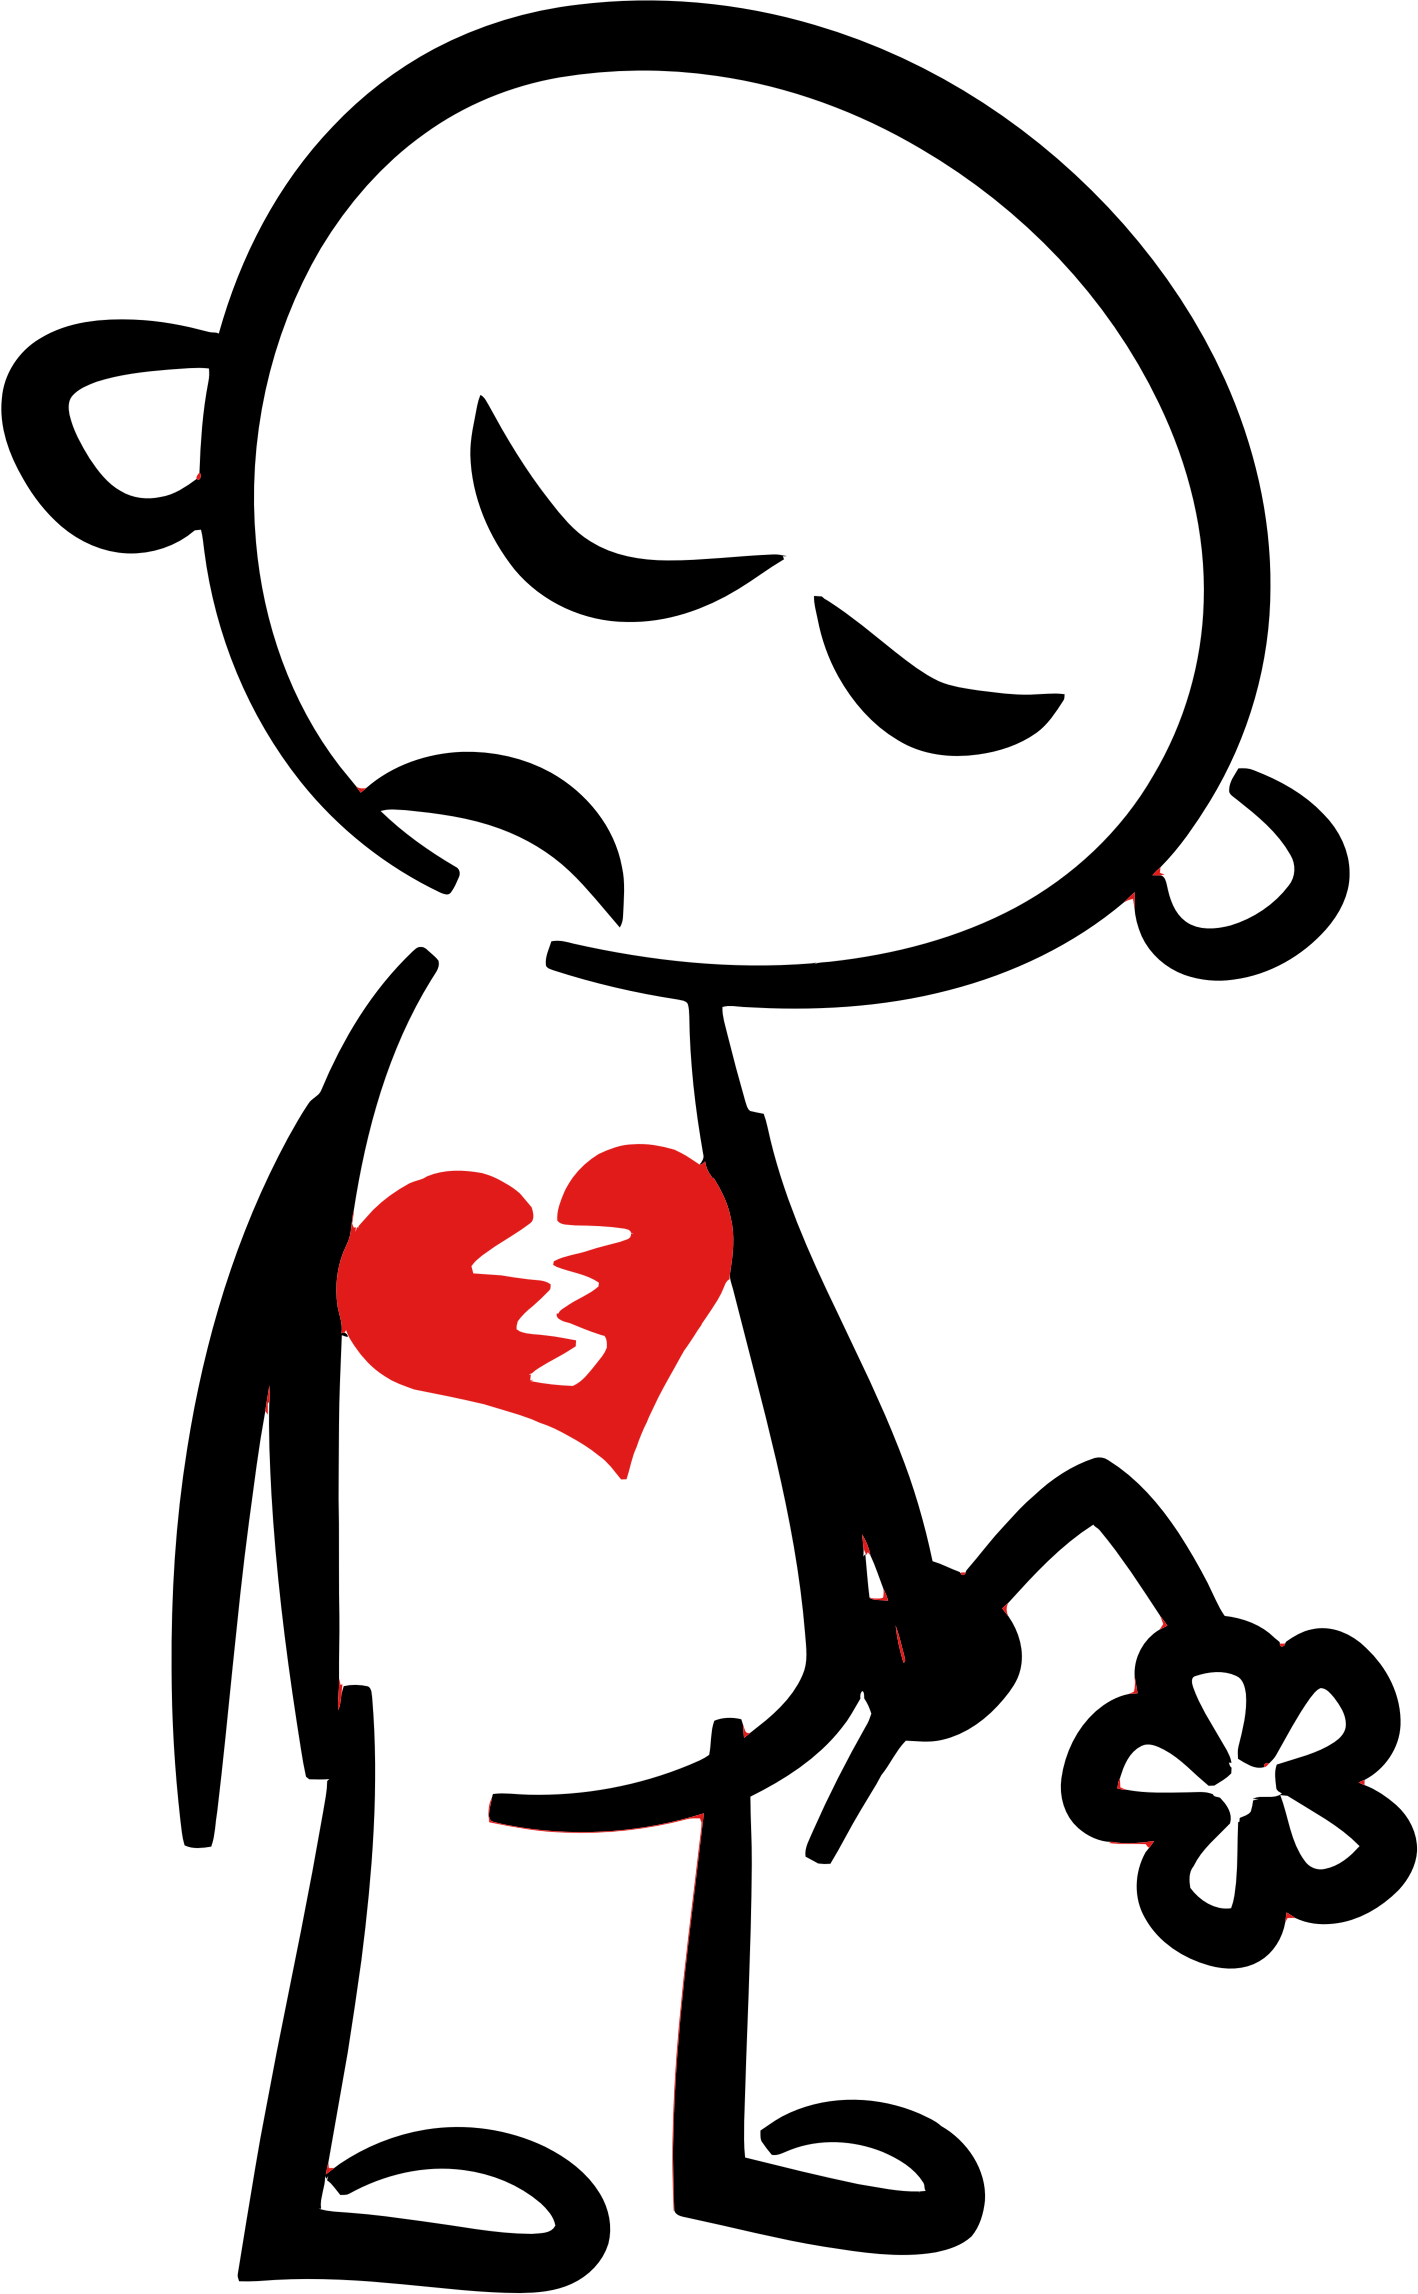 Broken heart clip art at clker vector clip art 2 image